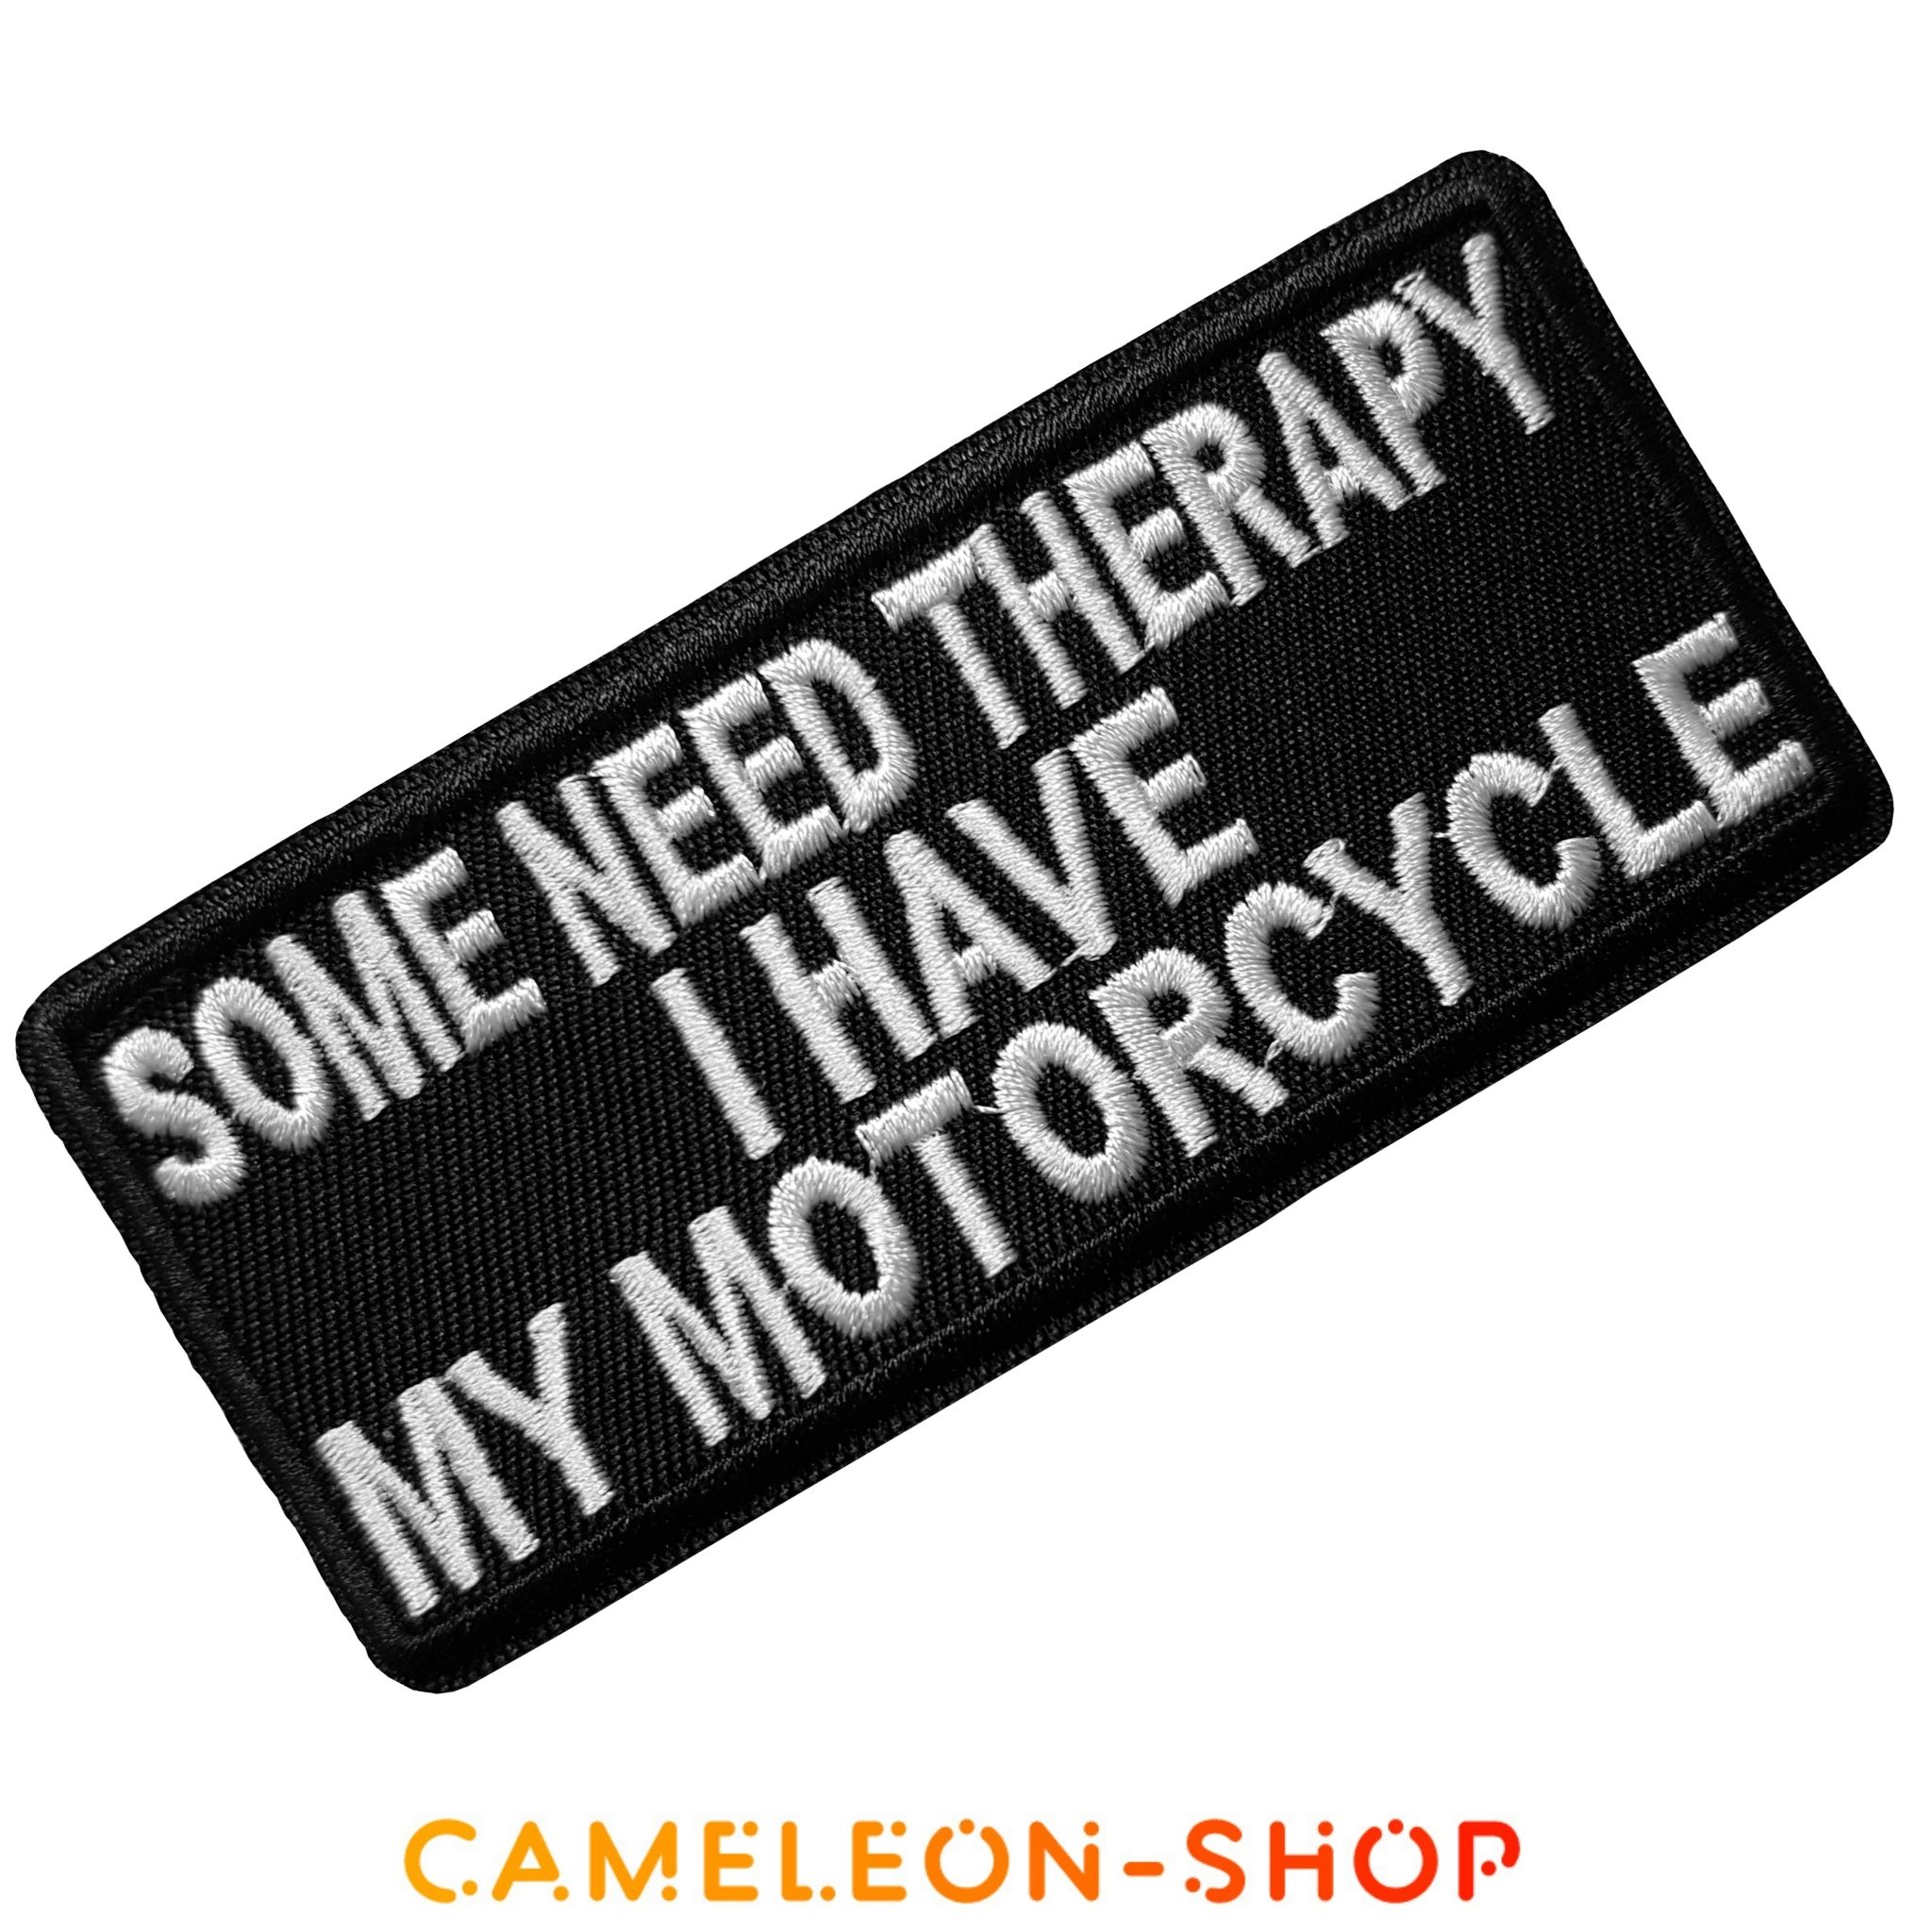 Écusson Certains Ont Besoin de Thérapie Moi JAi Ma Moto Patch Biker Motard Thermocollant 3